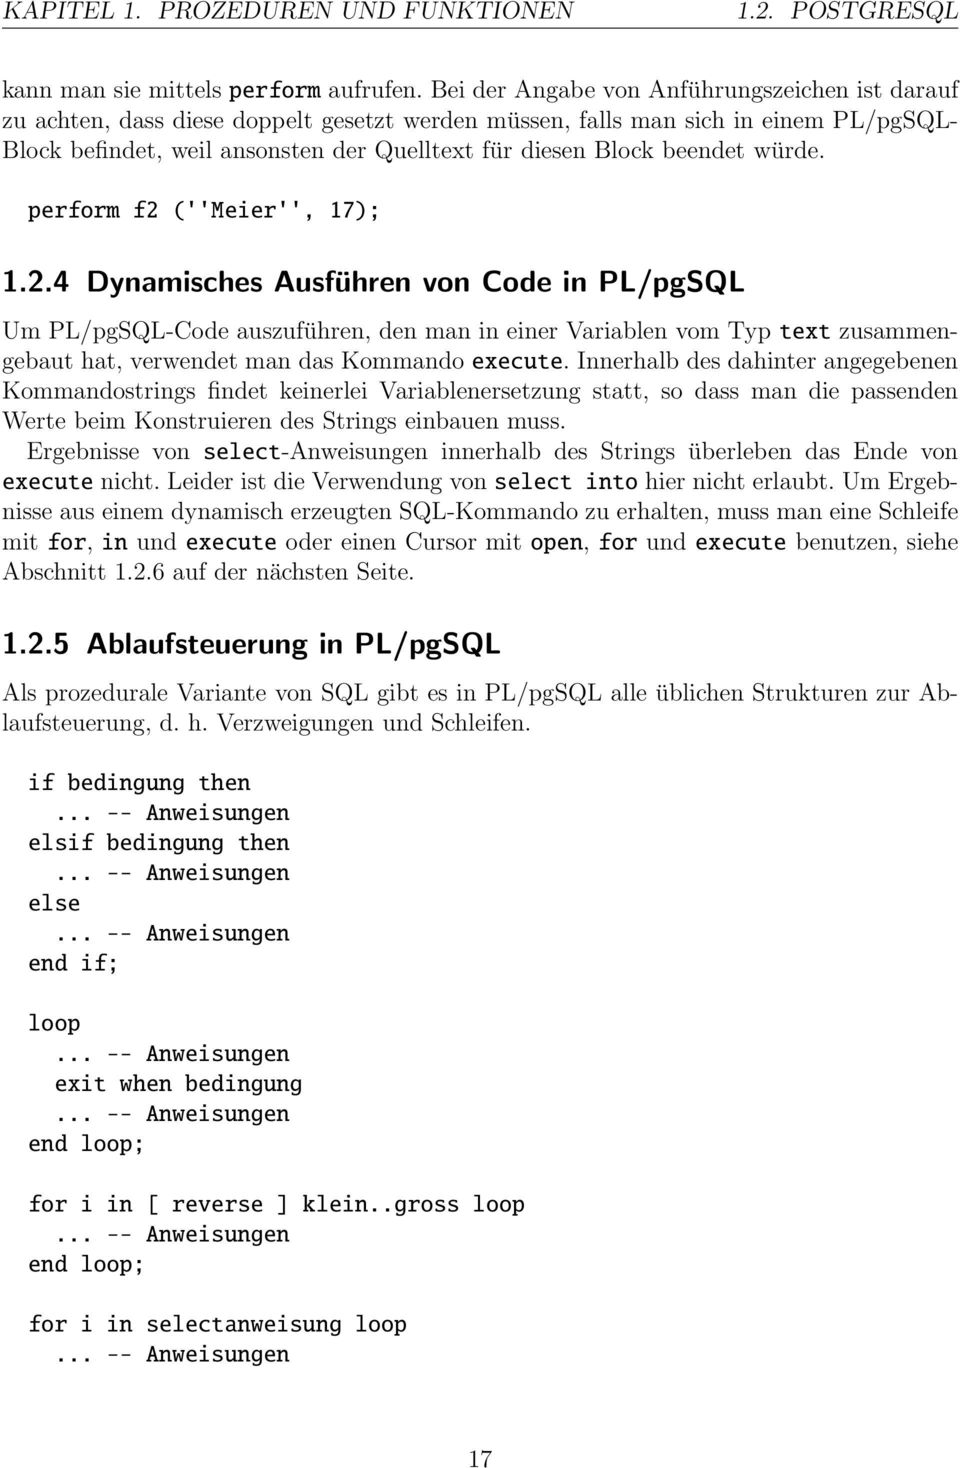 beendet würde. perform f2 (''Meier'', 17); 1.2.4 Dynamisches Ausführen von Code in PL/pgSQL Um PL/pgSQL-Code auszuführen, den man in einer Variablen vom Typ text zusammengebaut hat, verwendet man das Kommando execute.